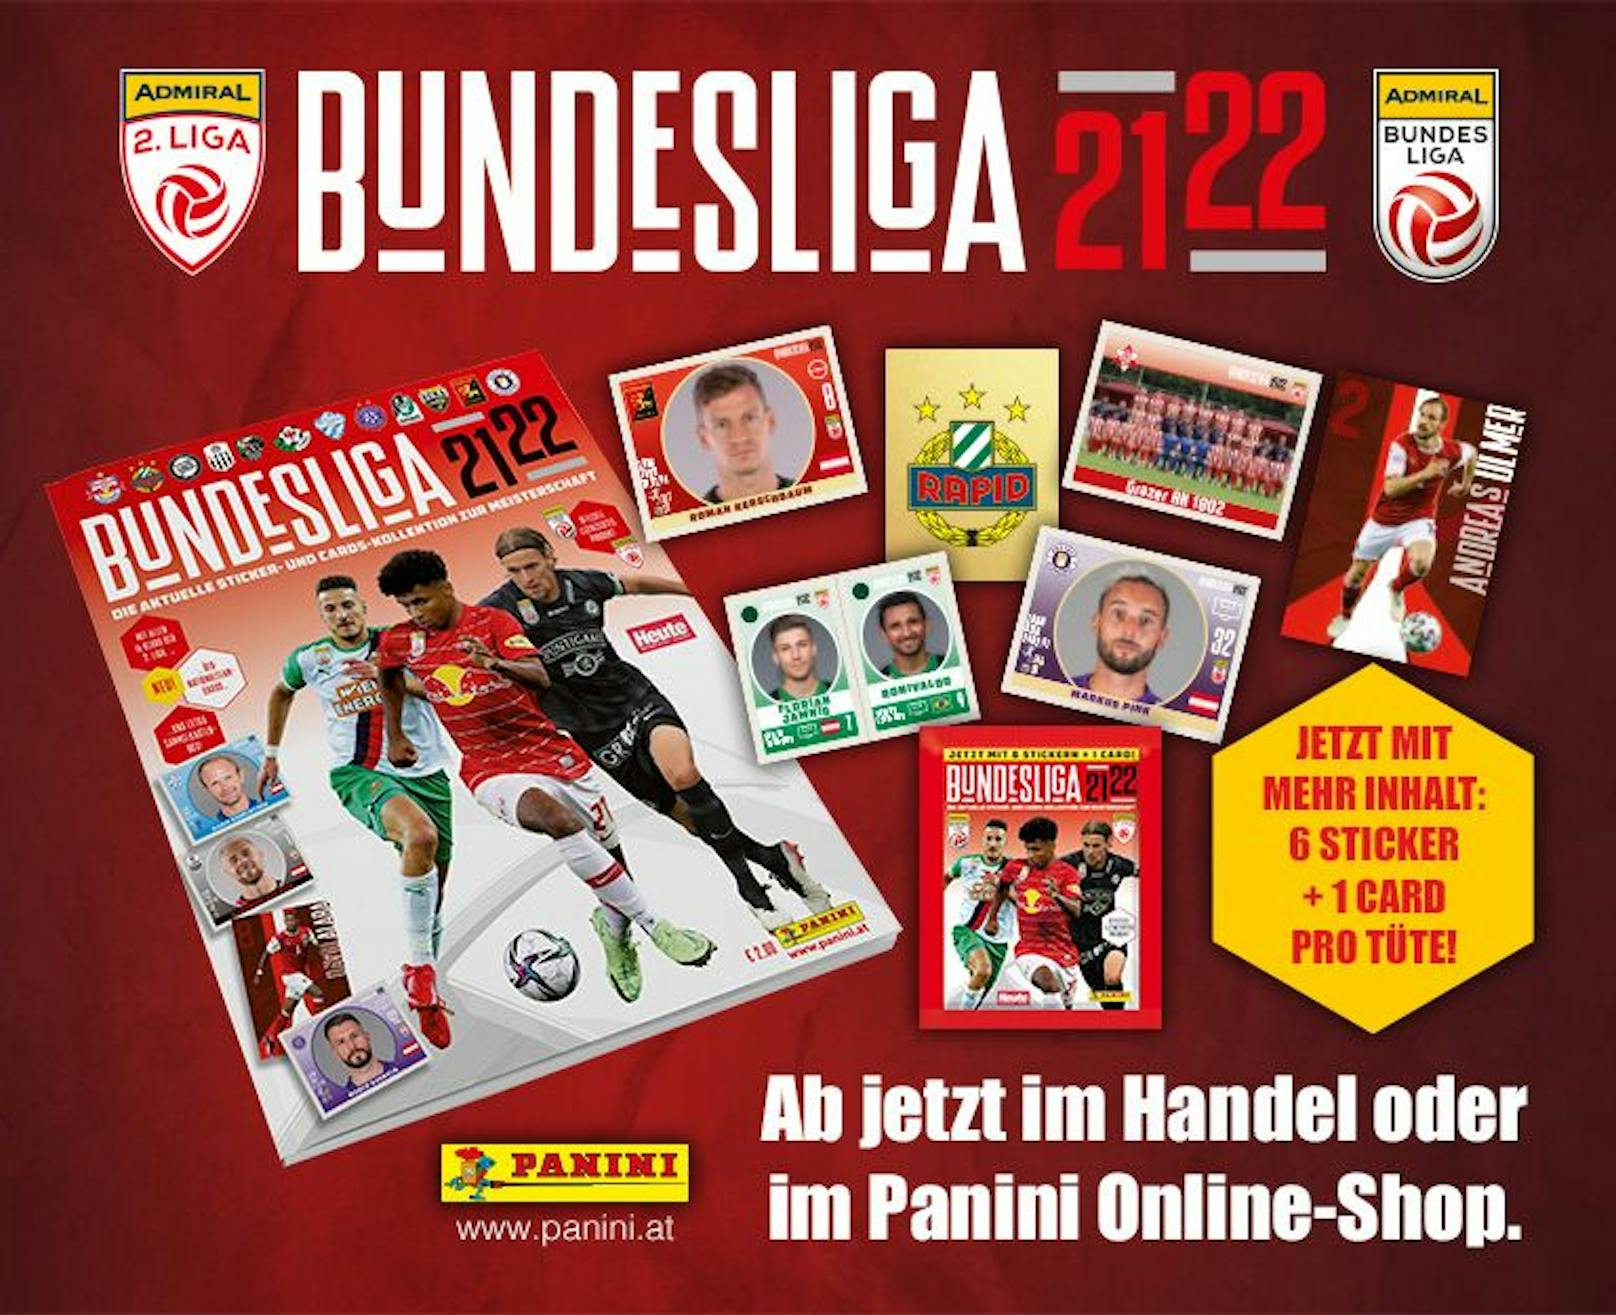 Jetzt teilnehmen &amp; gewinnen: <strong><a target="_blank" href="https://collectibles.panini.at/startseite.html">PANINI</a></strong> verlost zur neuen Bundesliga 21/22-Sammelkollektion fantastische Preise!